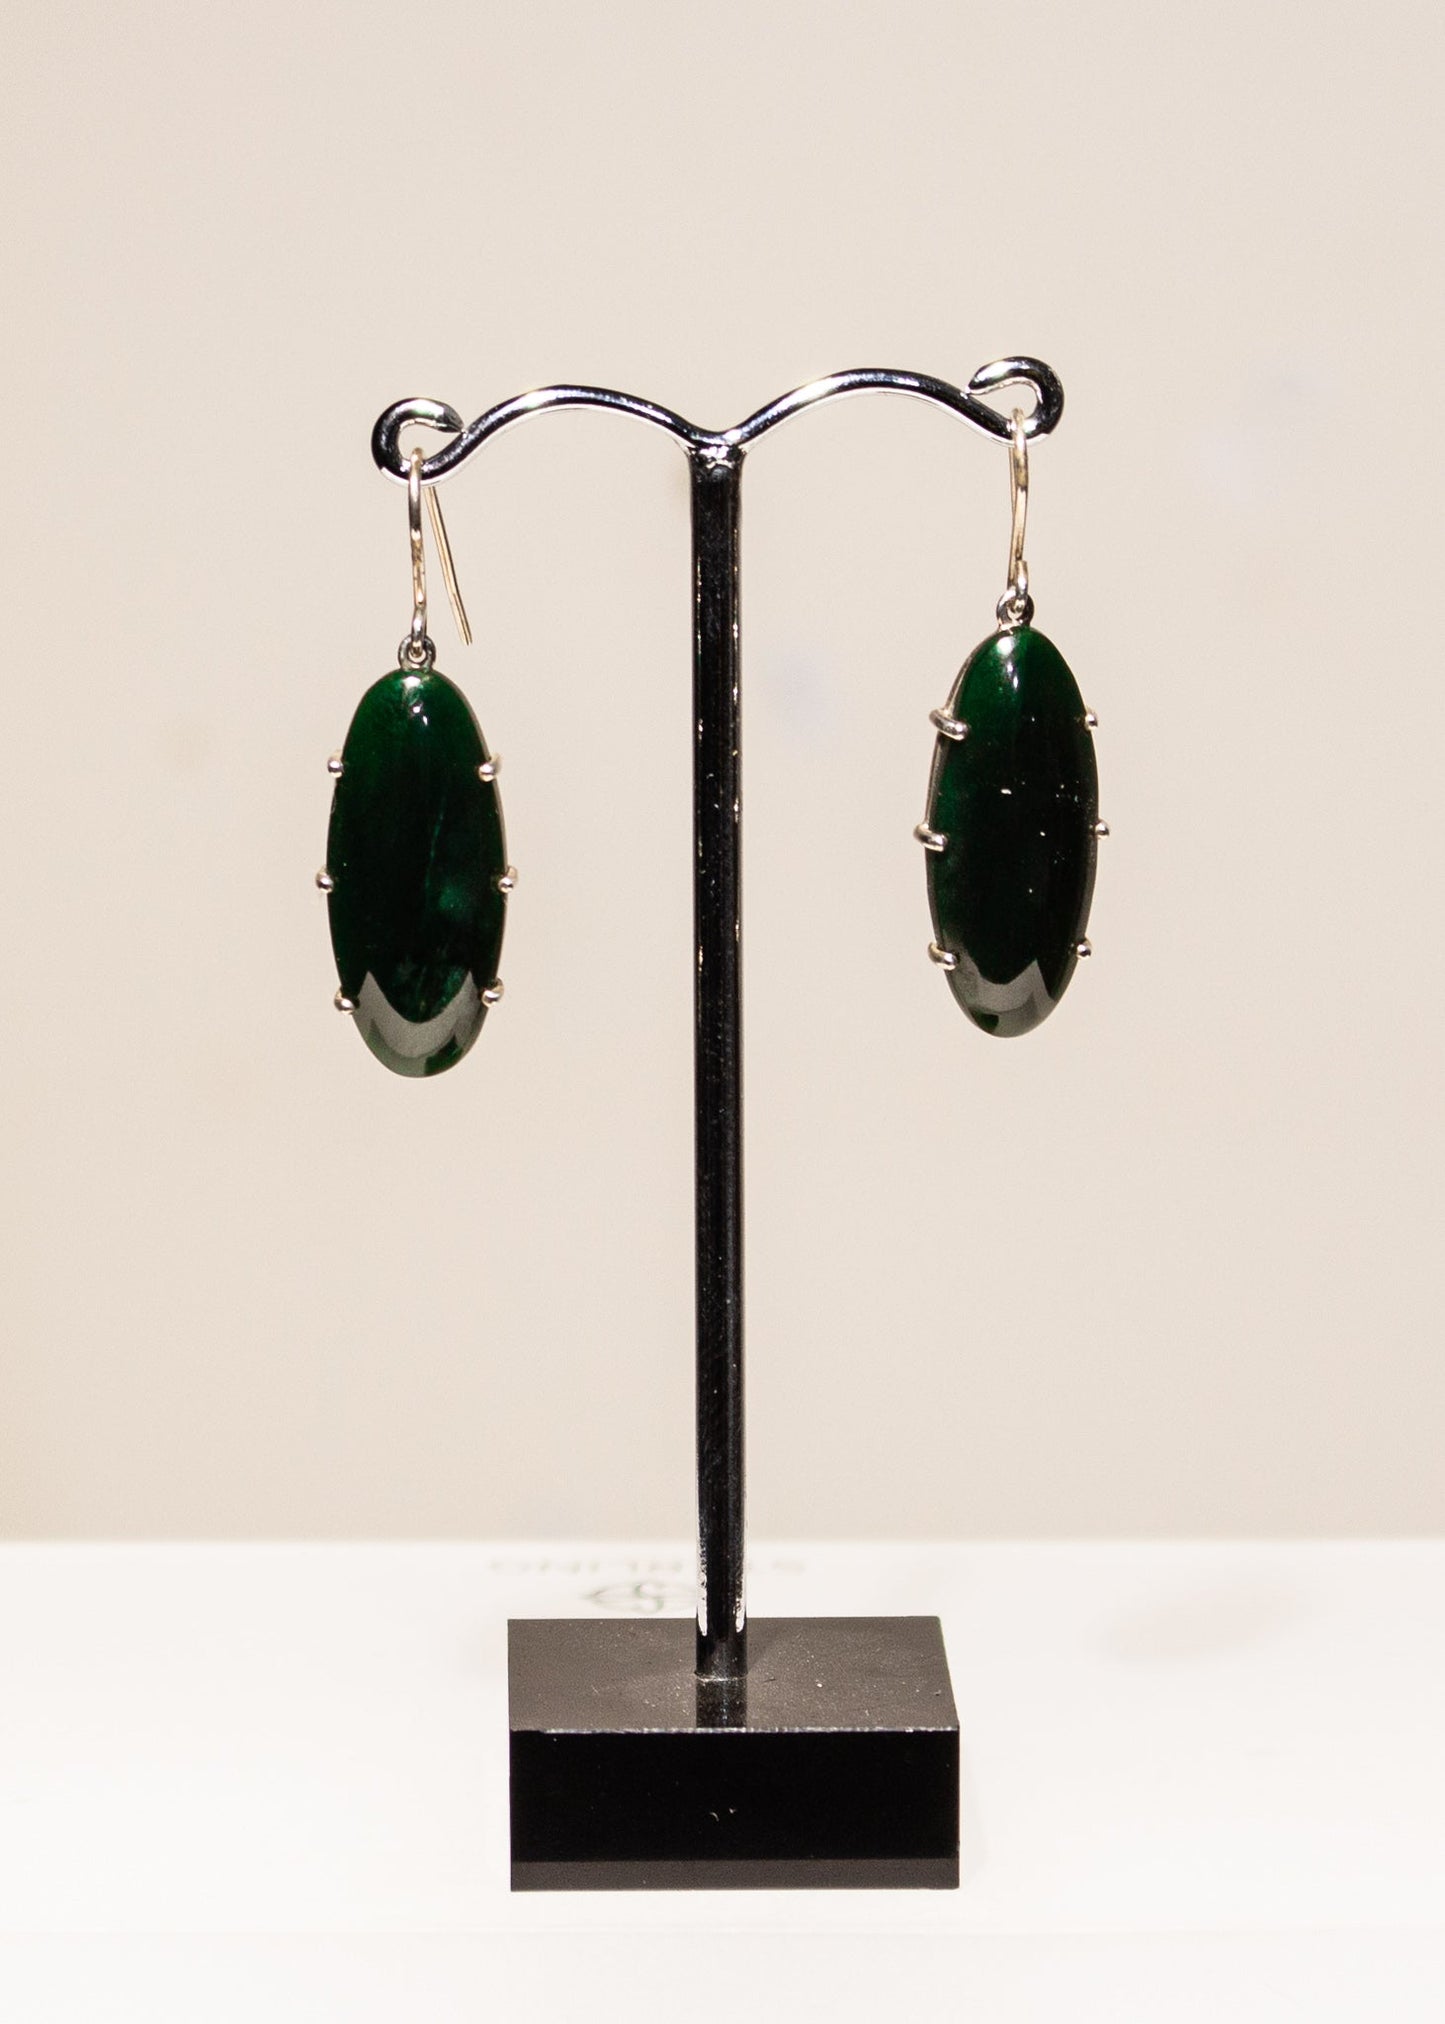 Greenstone Earrings - Drop oval